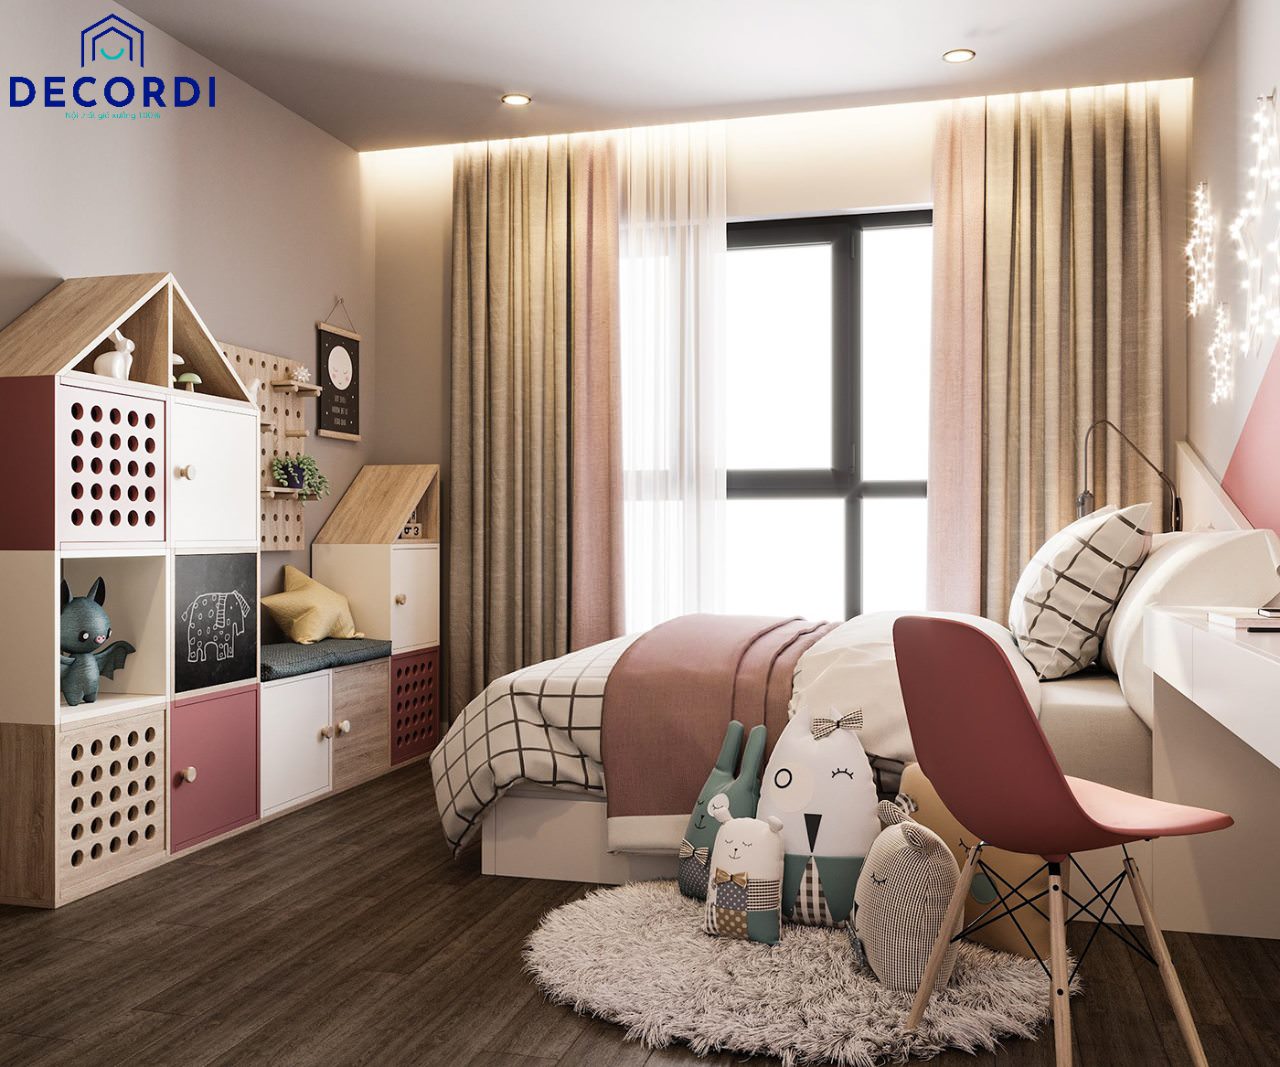 Phong cách thiết kế phòng ngủ nhỏ 9m2 thường là phong cách hiện đại, đơn giản để căn phòng không bị rối cùng gam màu trắng hồng